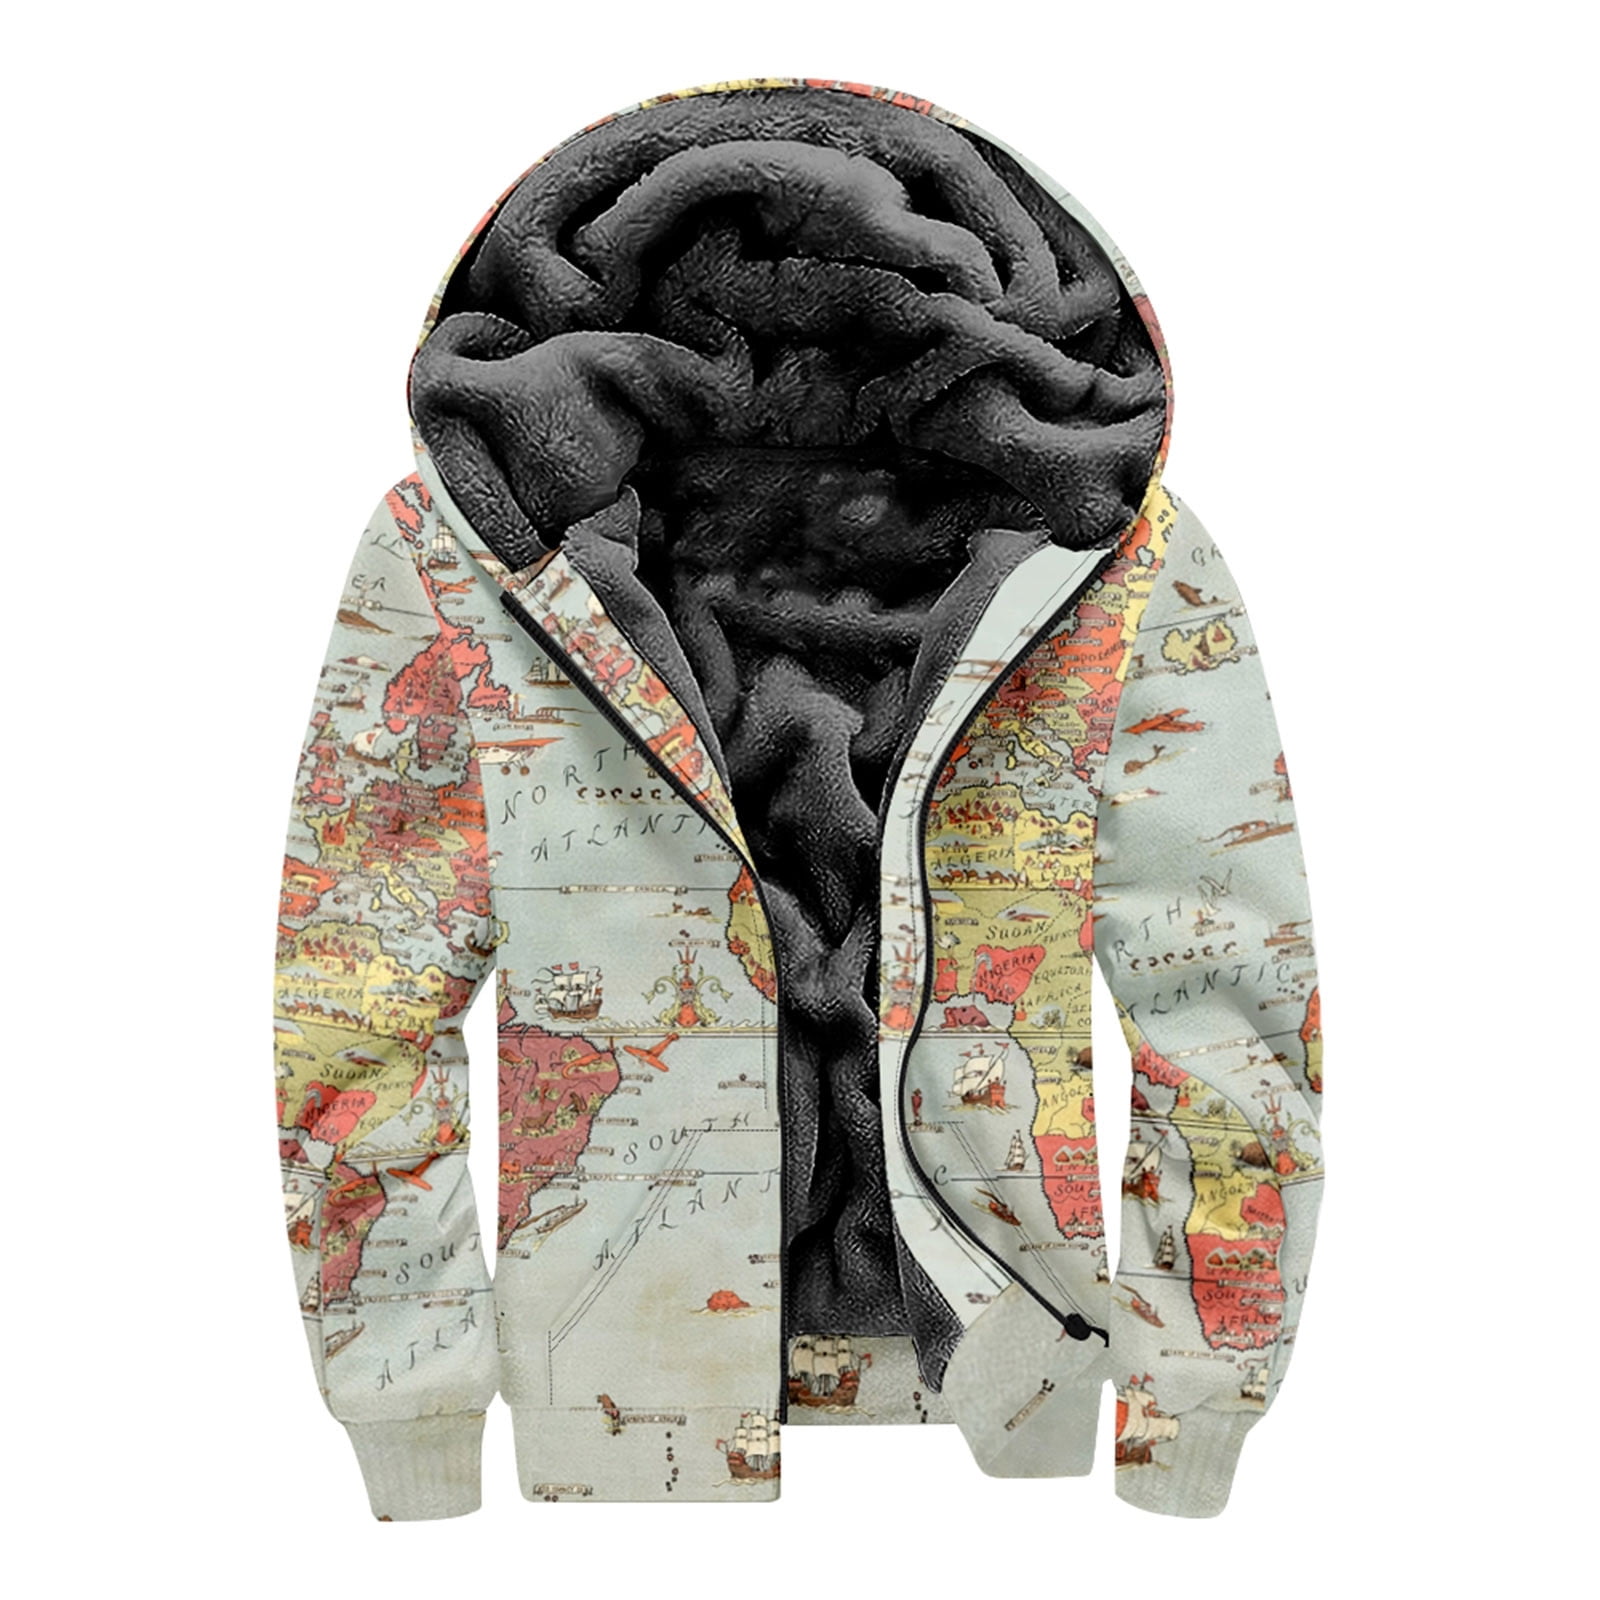 Simplmasygenix Men's Winter Jacket Casual Hoodie For Men Plus Size